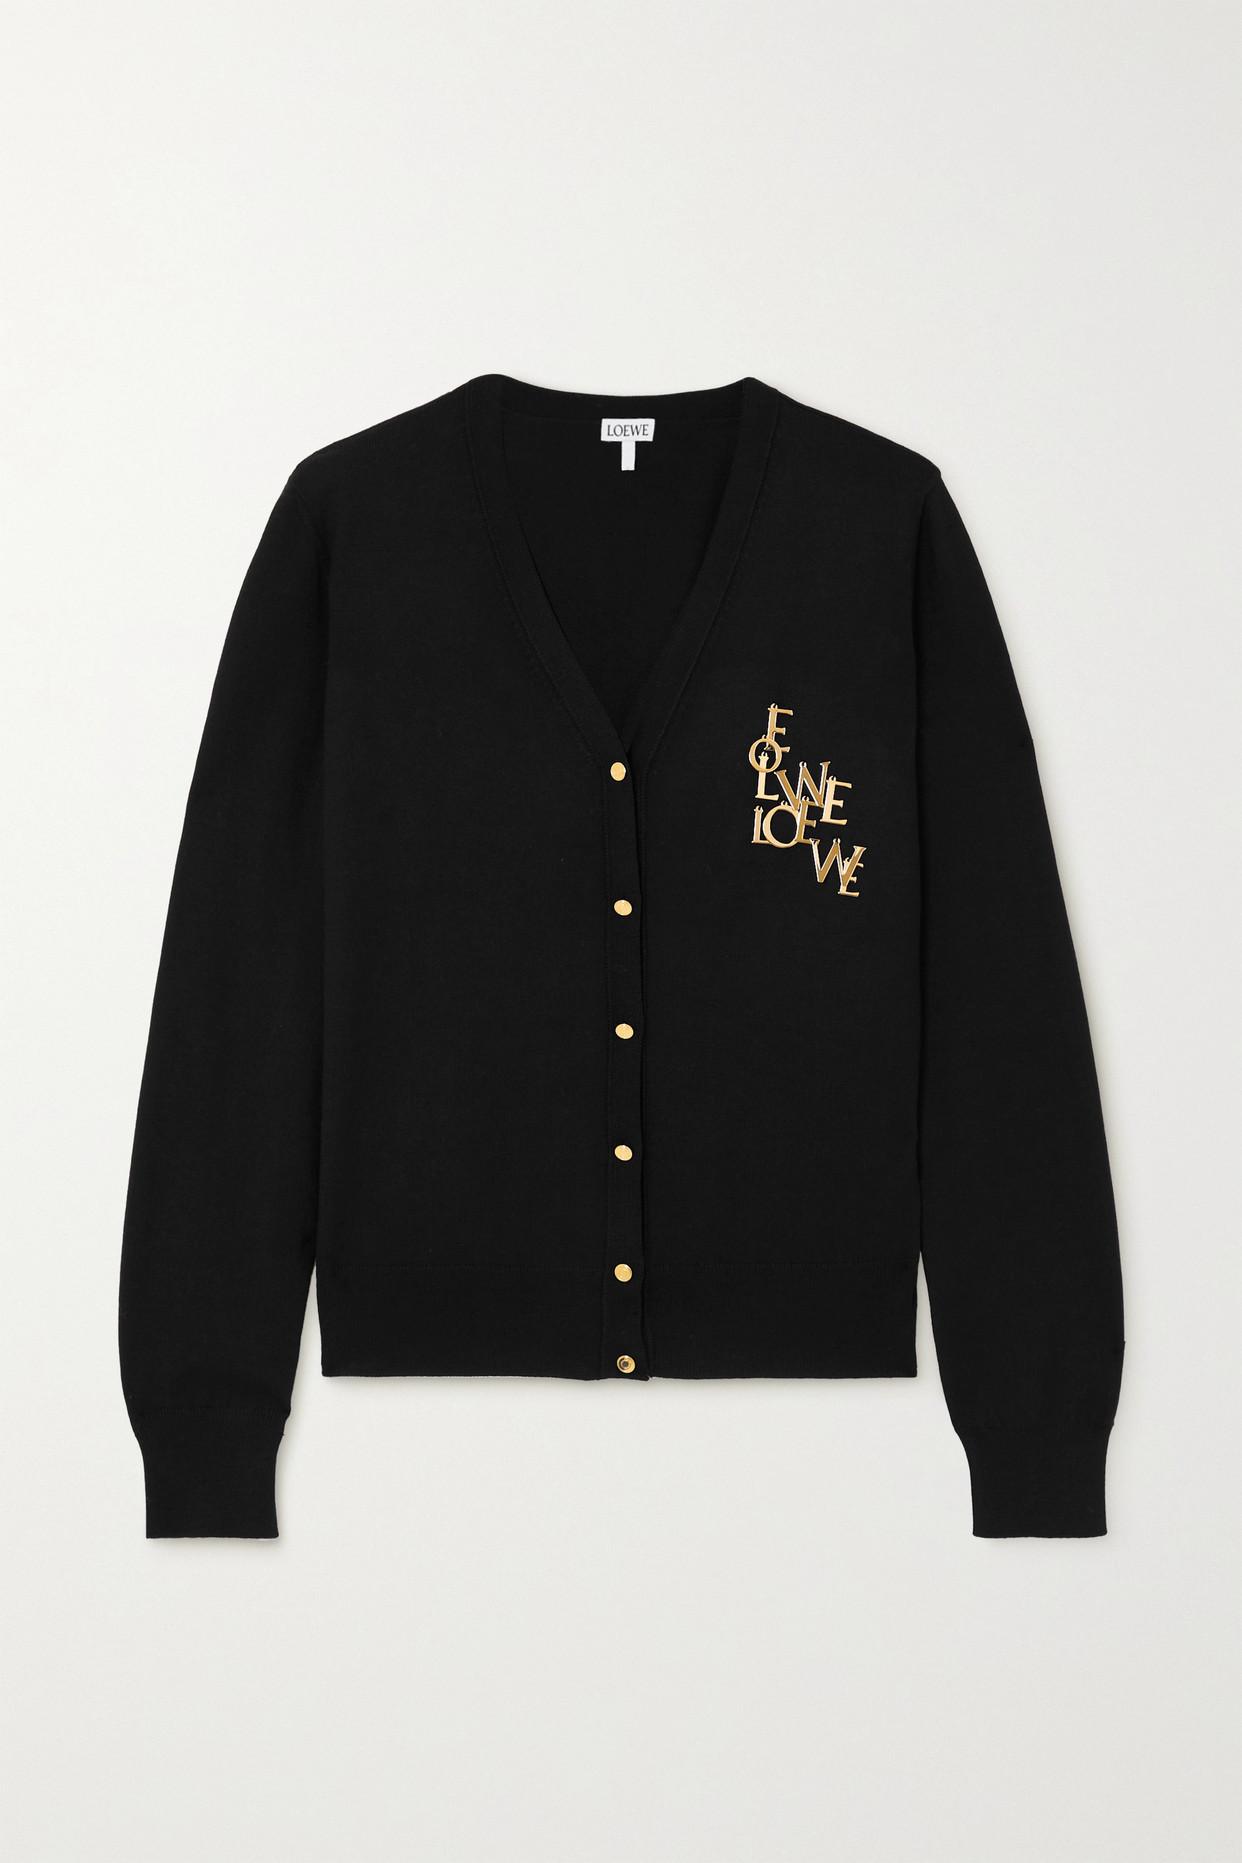 Loewe Embellished Wool-blend Cardigan in Black | Lyst